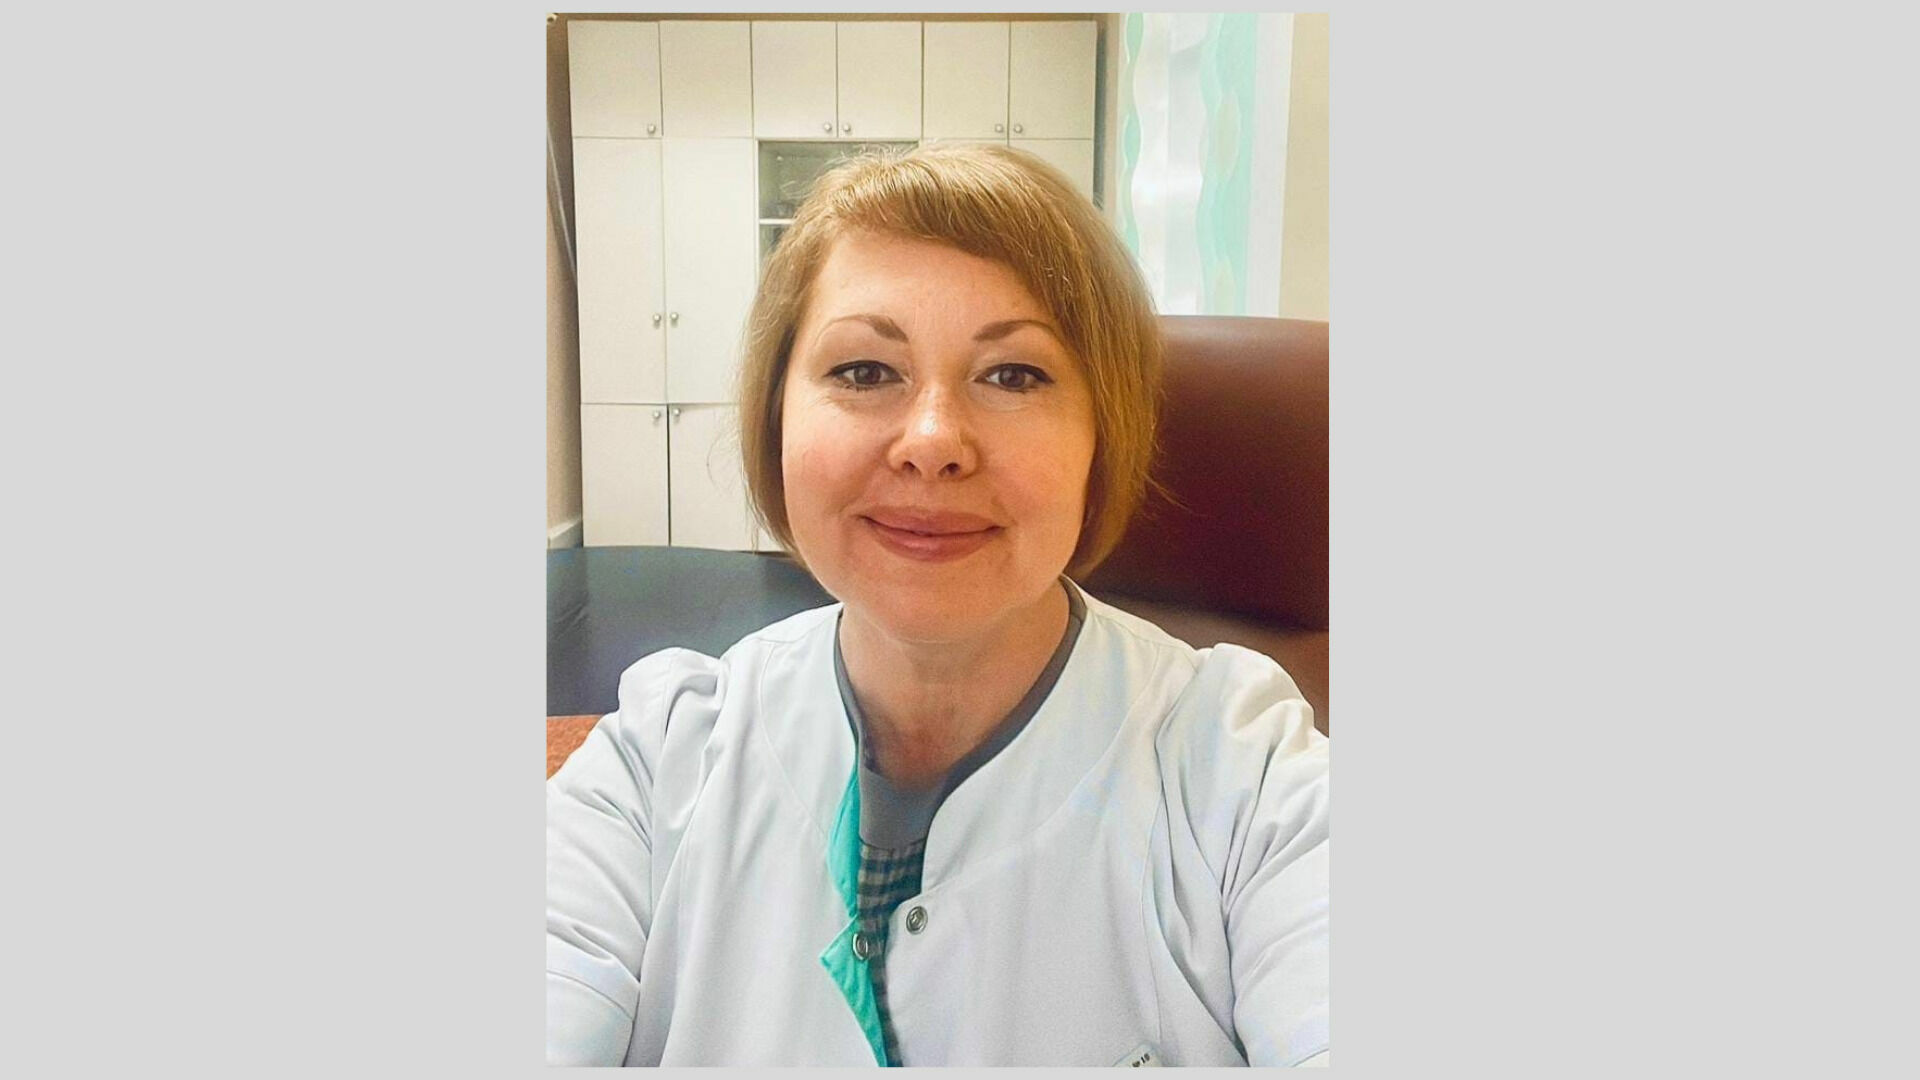 Новым главврачом городской поликлиники №10 Ижевска стала Наталья Волчкова